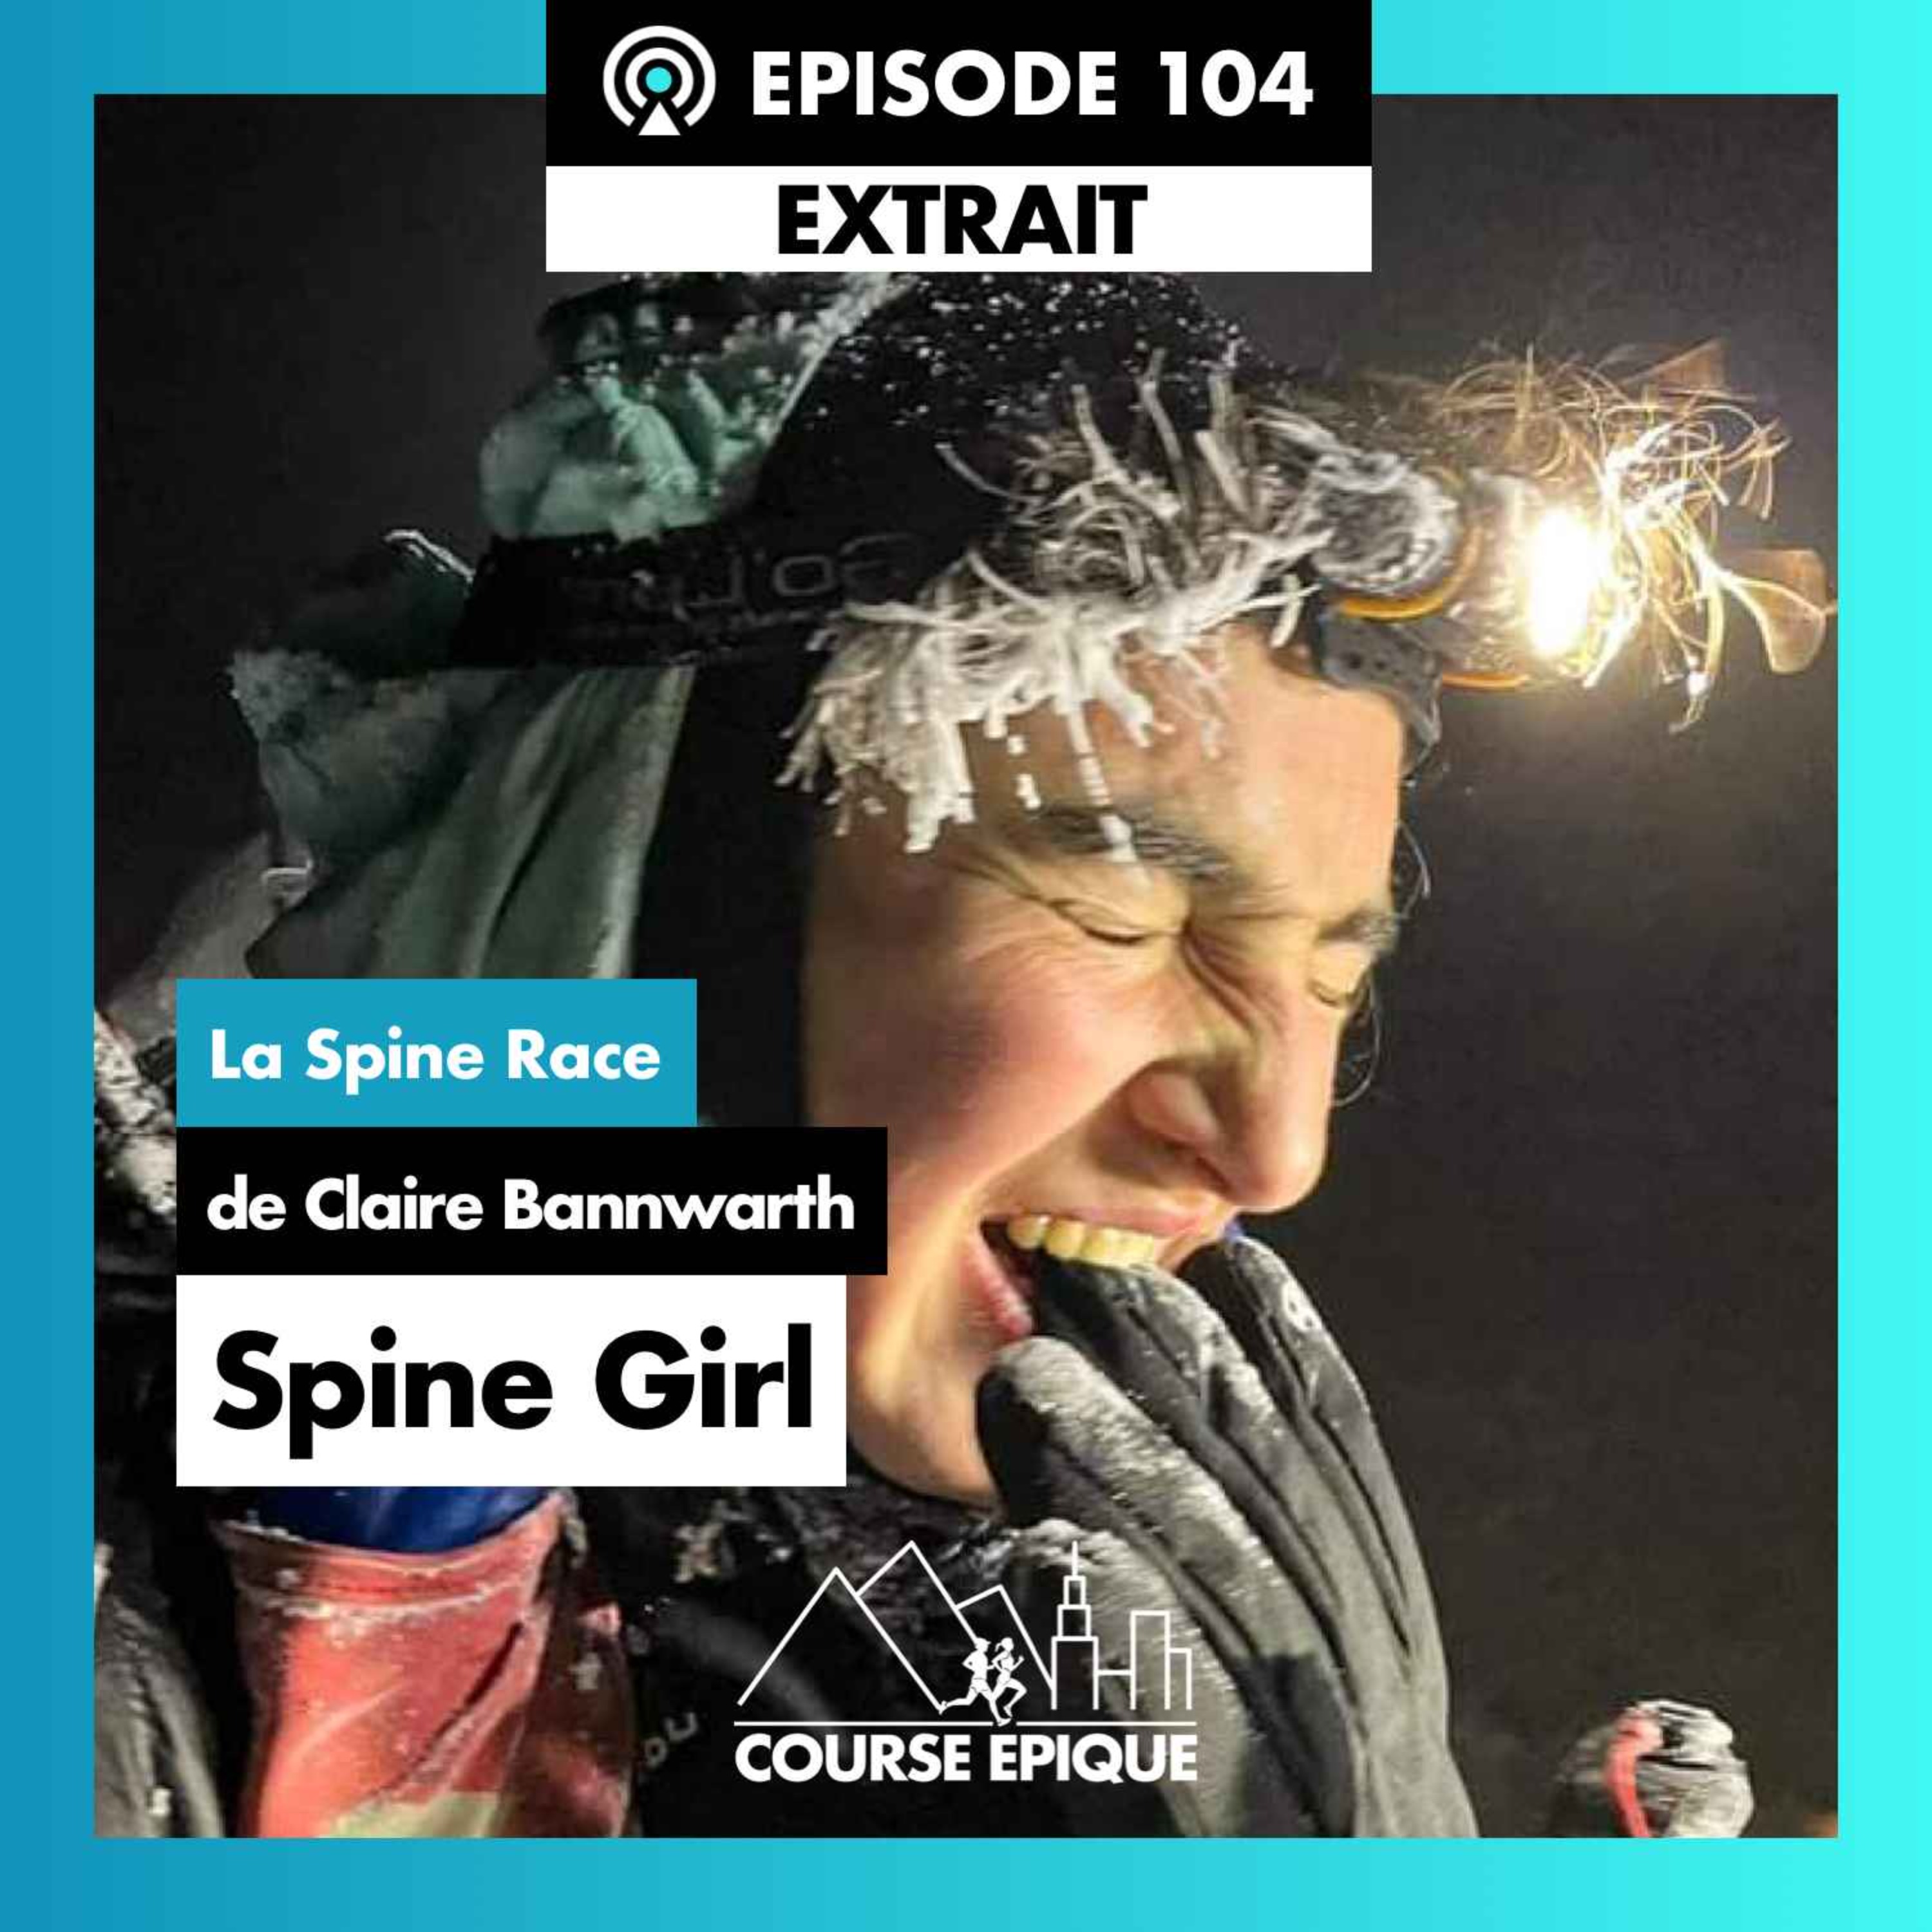 [EXTRAIT] "Spine Girl", la Spine Race de Claire Bannwarth